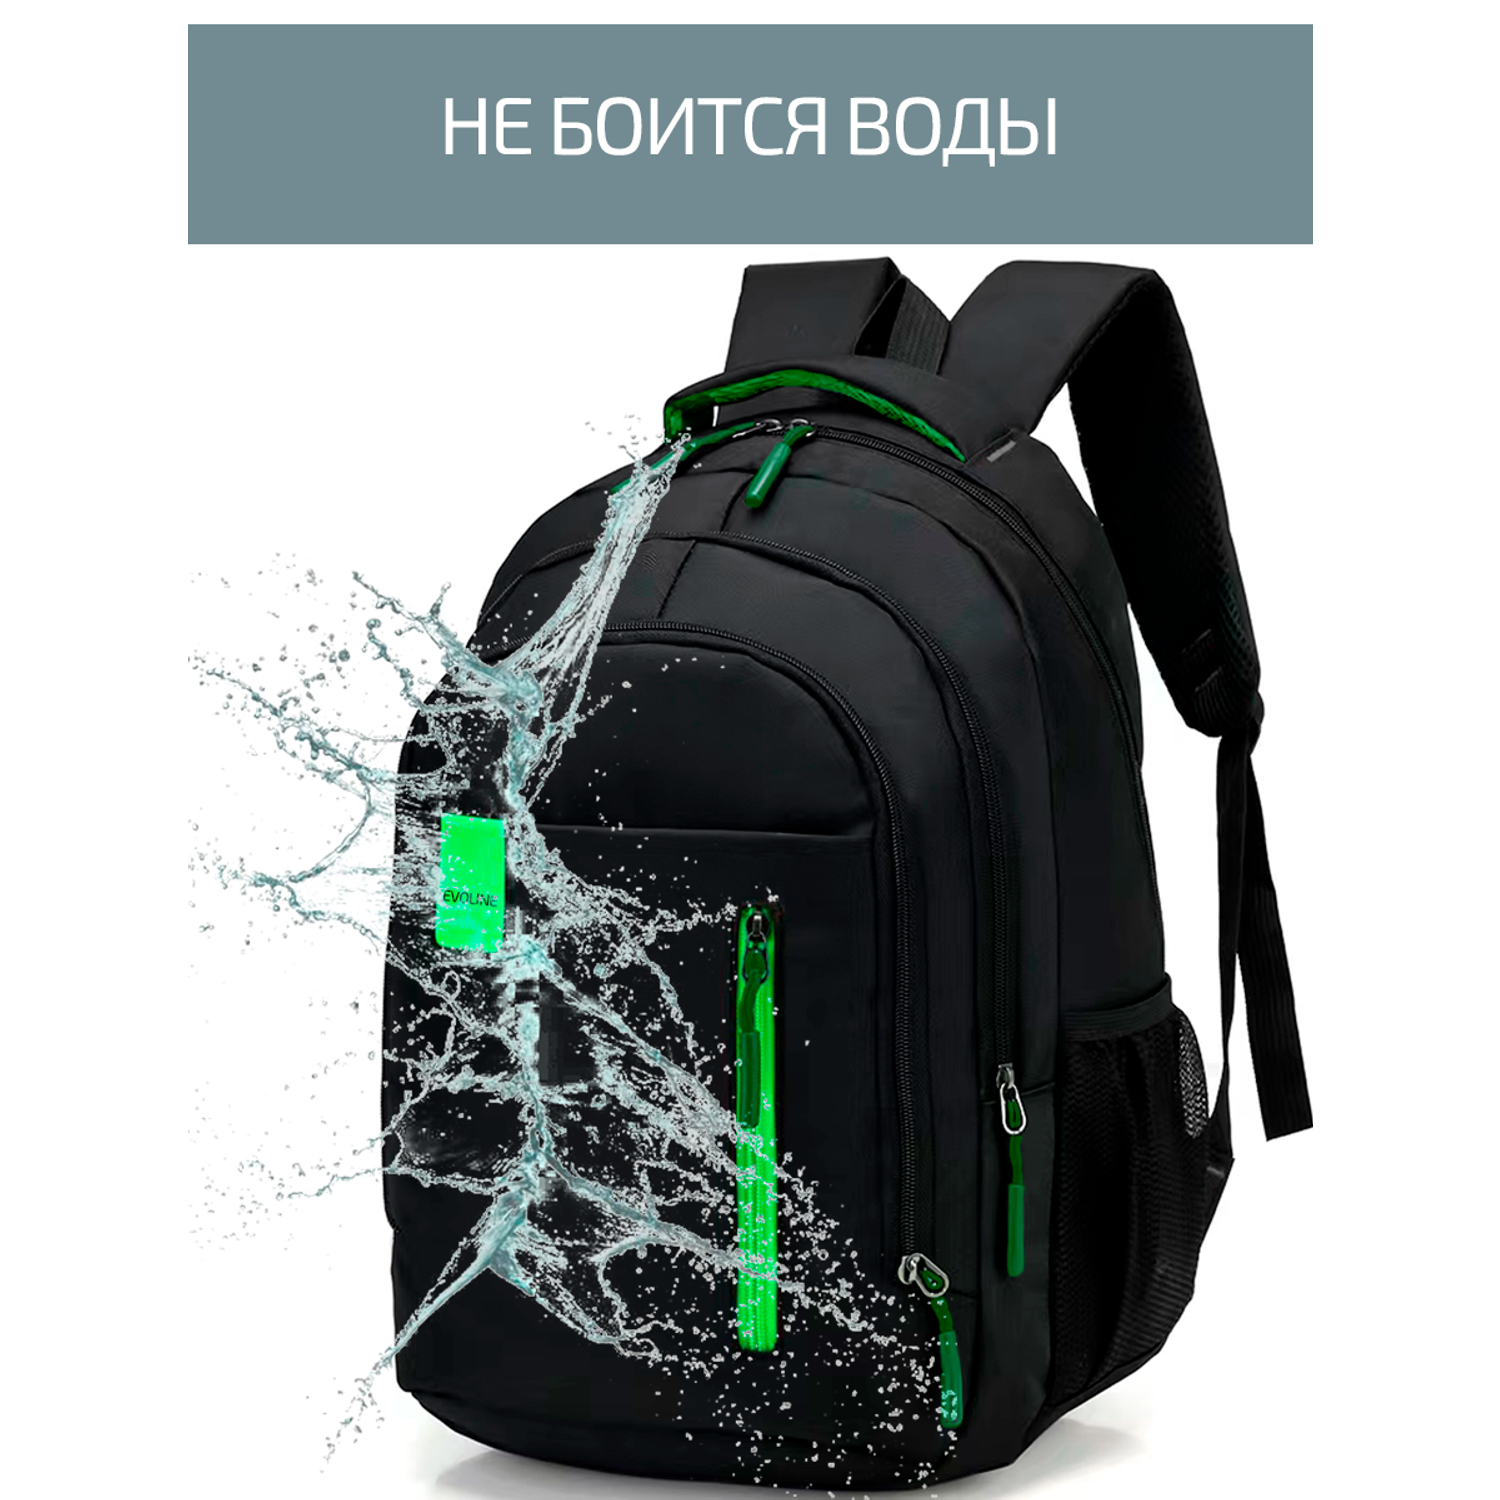 Рюкзак школьный Evoline Черный зеленый EVO-331-41 - фото 7